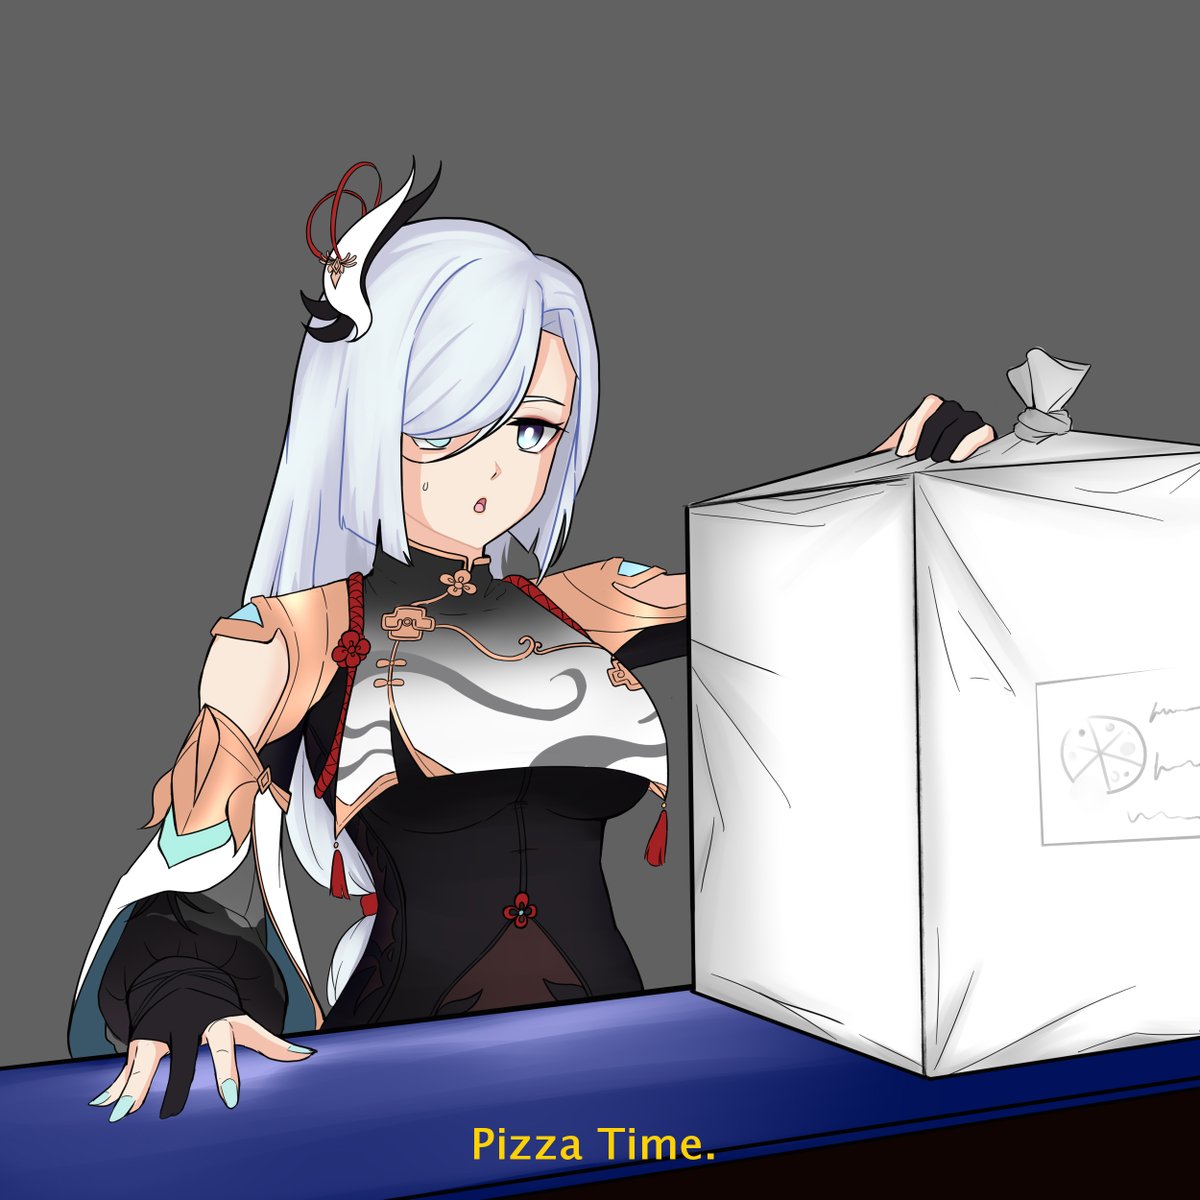 pizza time..  no context  :3
#shenhe #artmeme #animedrawing #genshinimpactfanart #shenhefanart